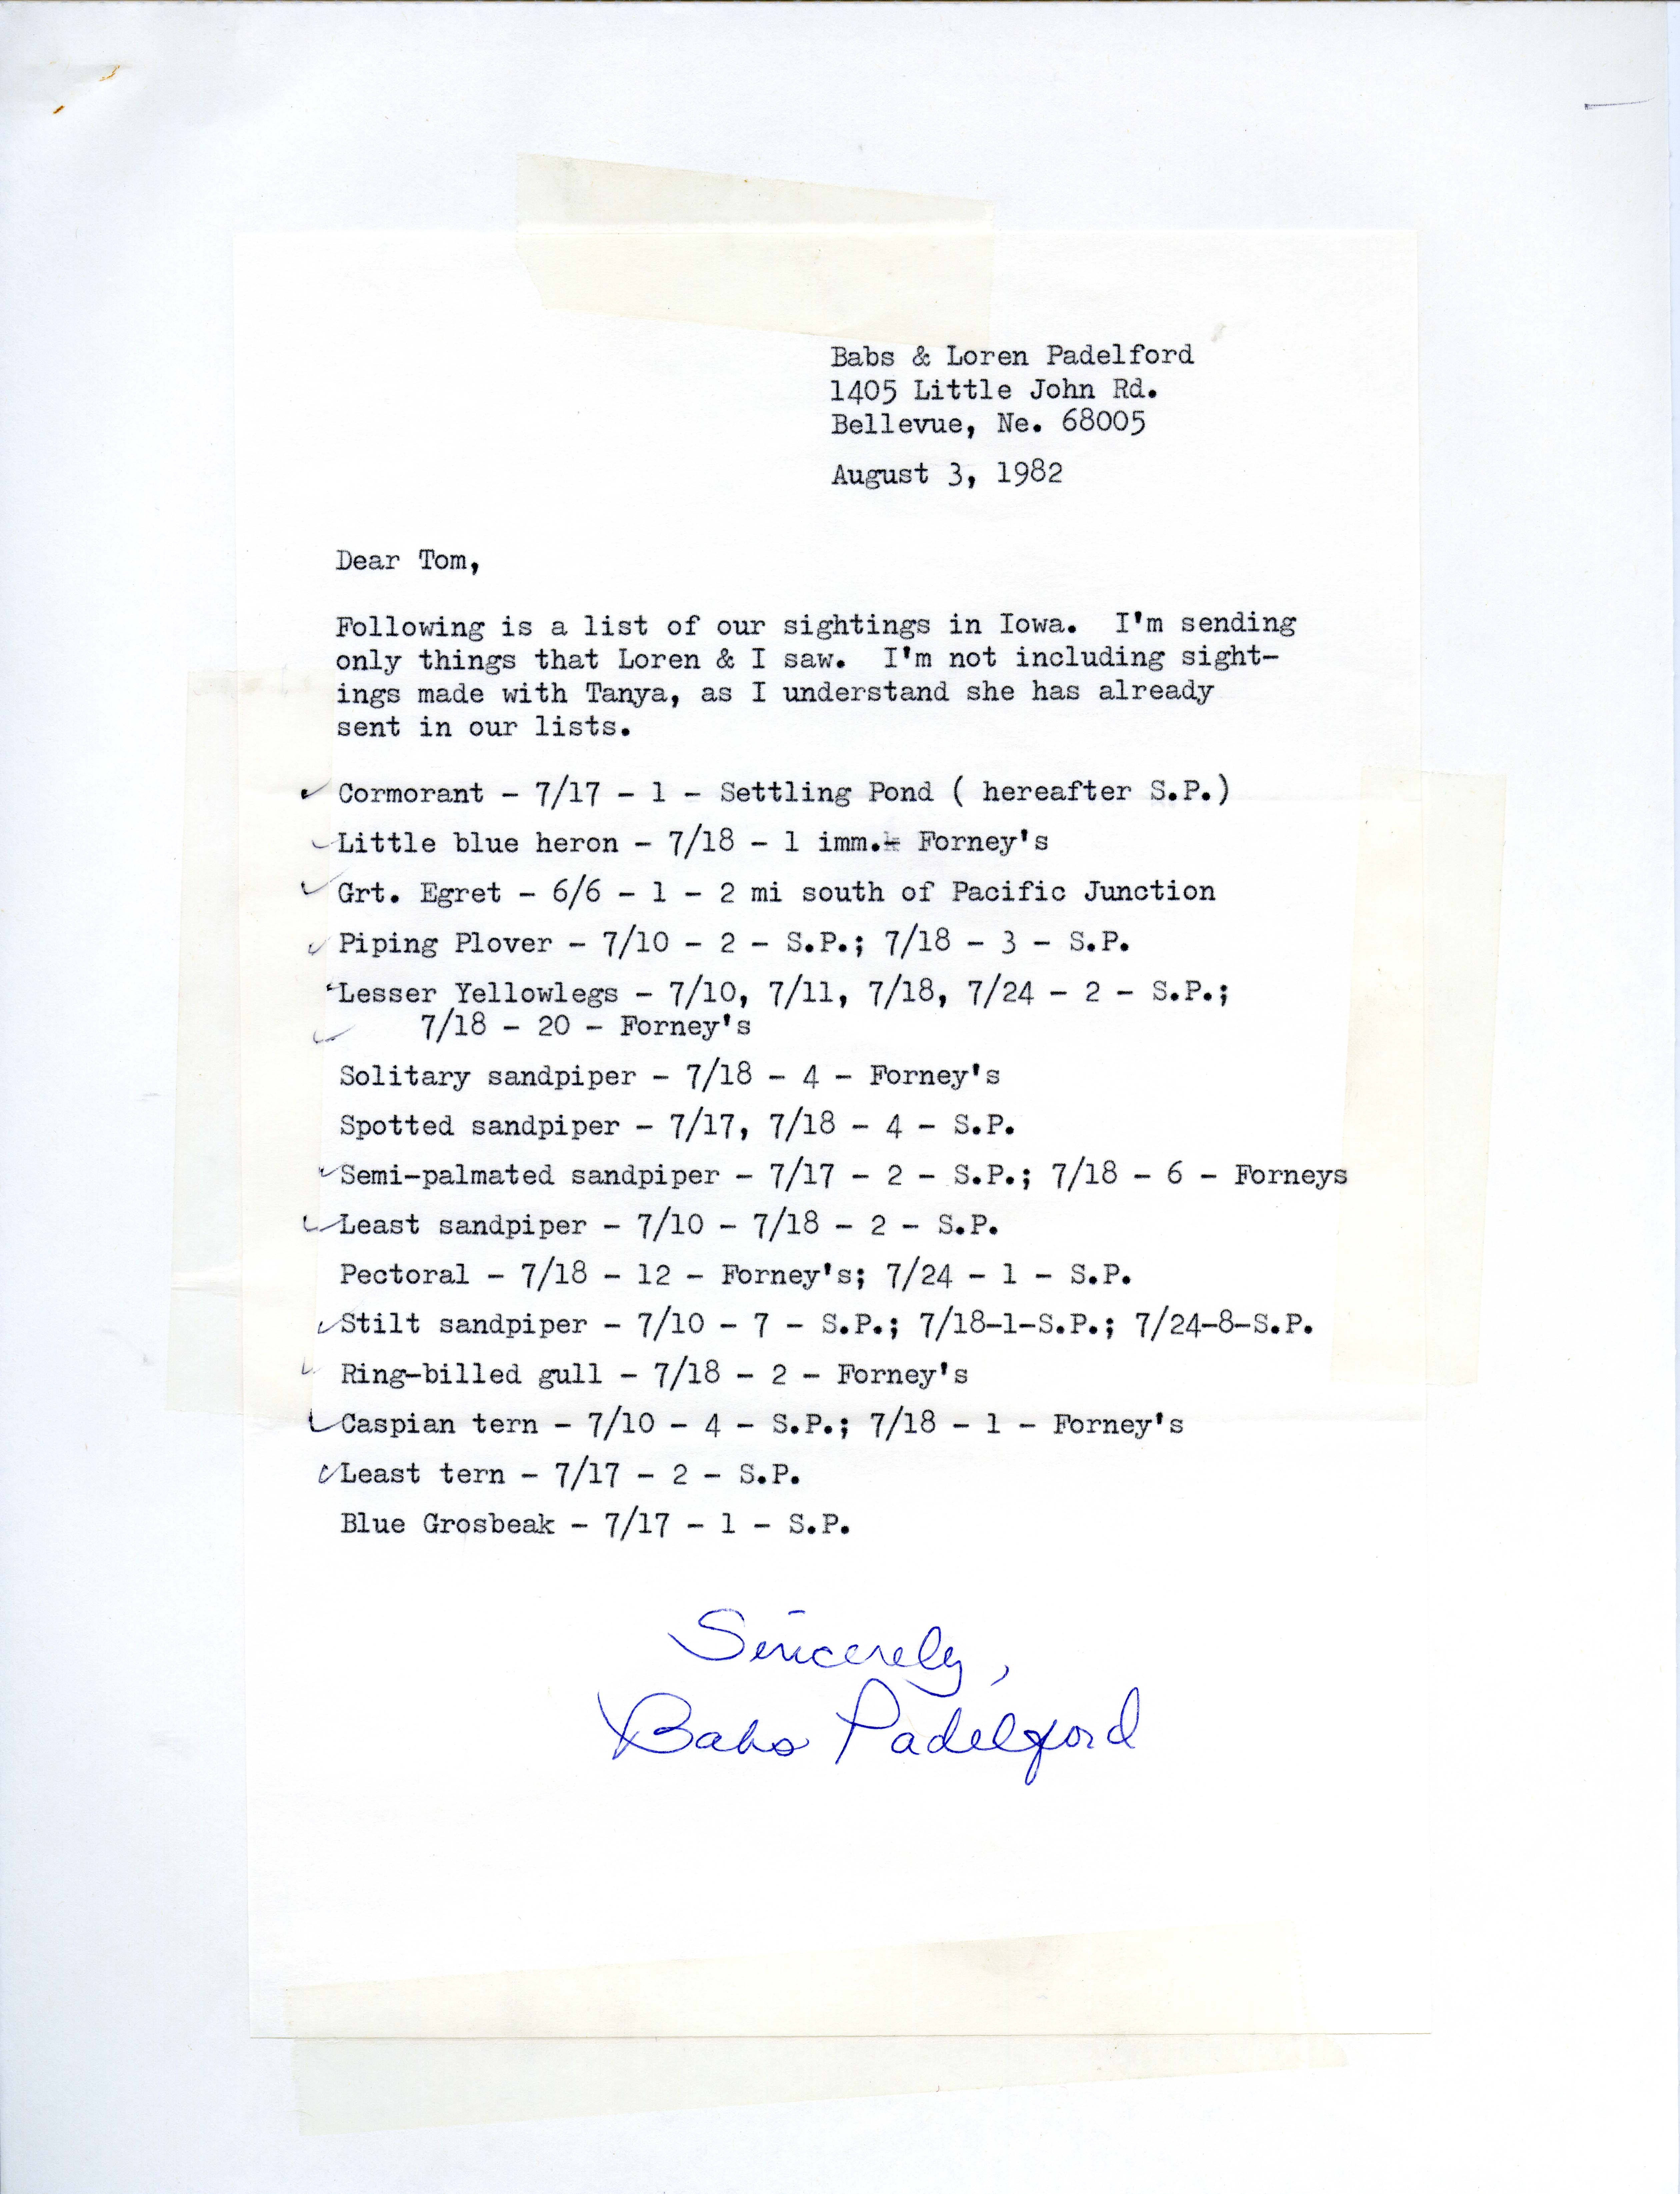 Babs Padelford letter to Thomas H. Kent regarding bird sightings, August 3, 1982